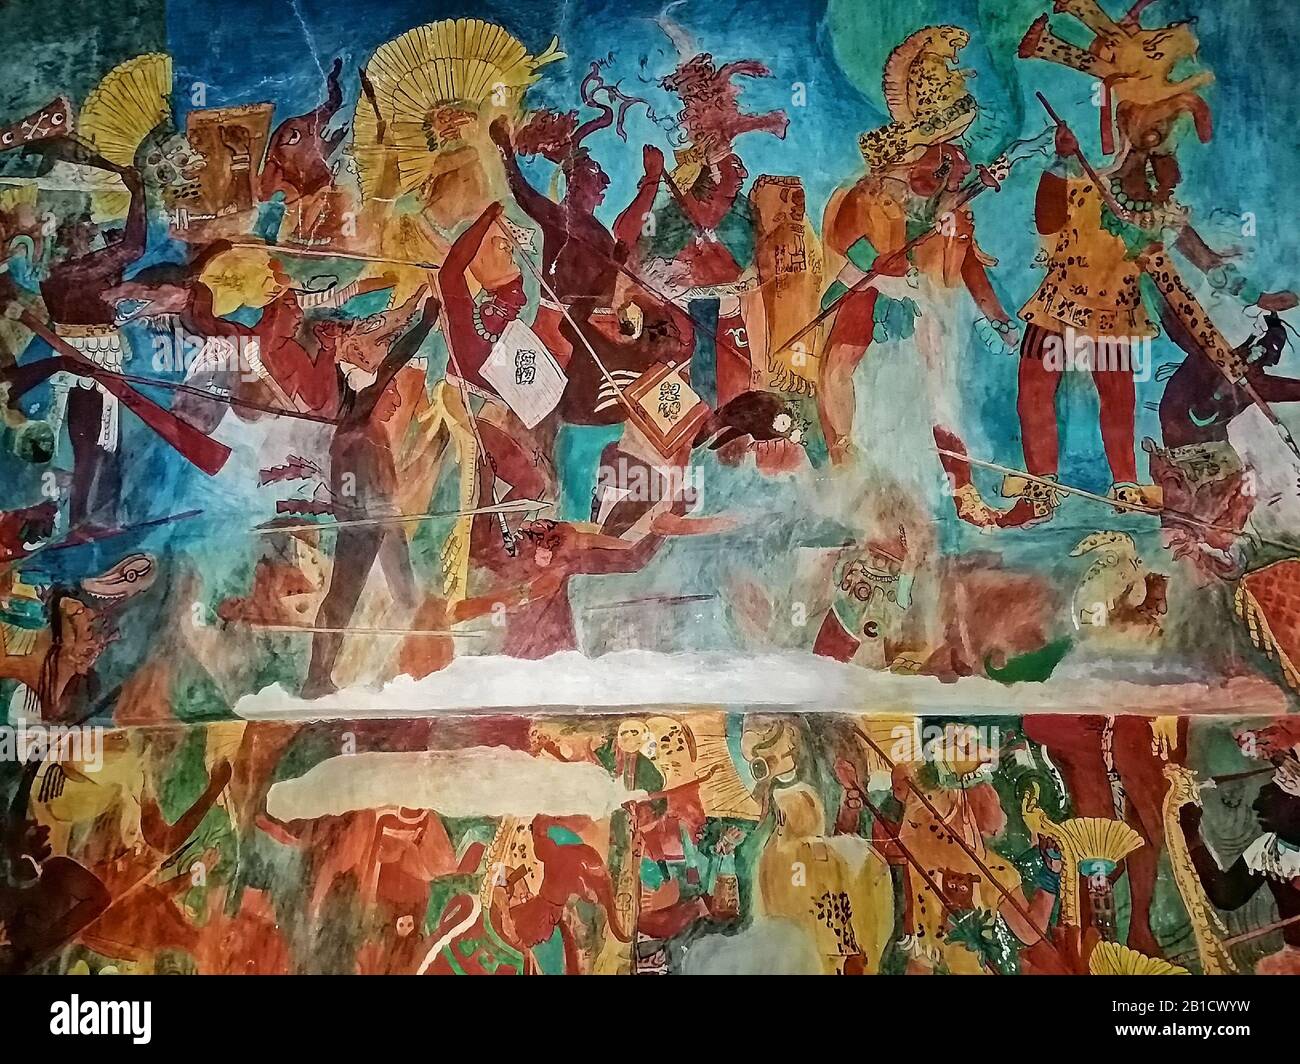 Peinture murale maya dans la pièce 1 du temple des peintures murales dans la ville maya ruine de Bonampak, Chiapas, Mexique. Banque D'Images